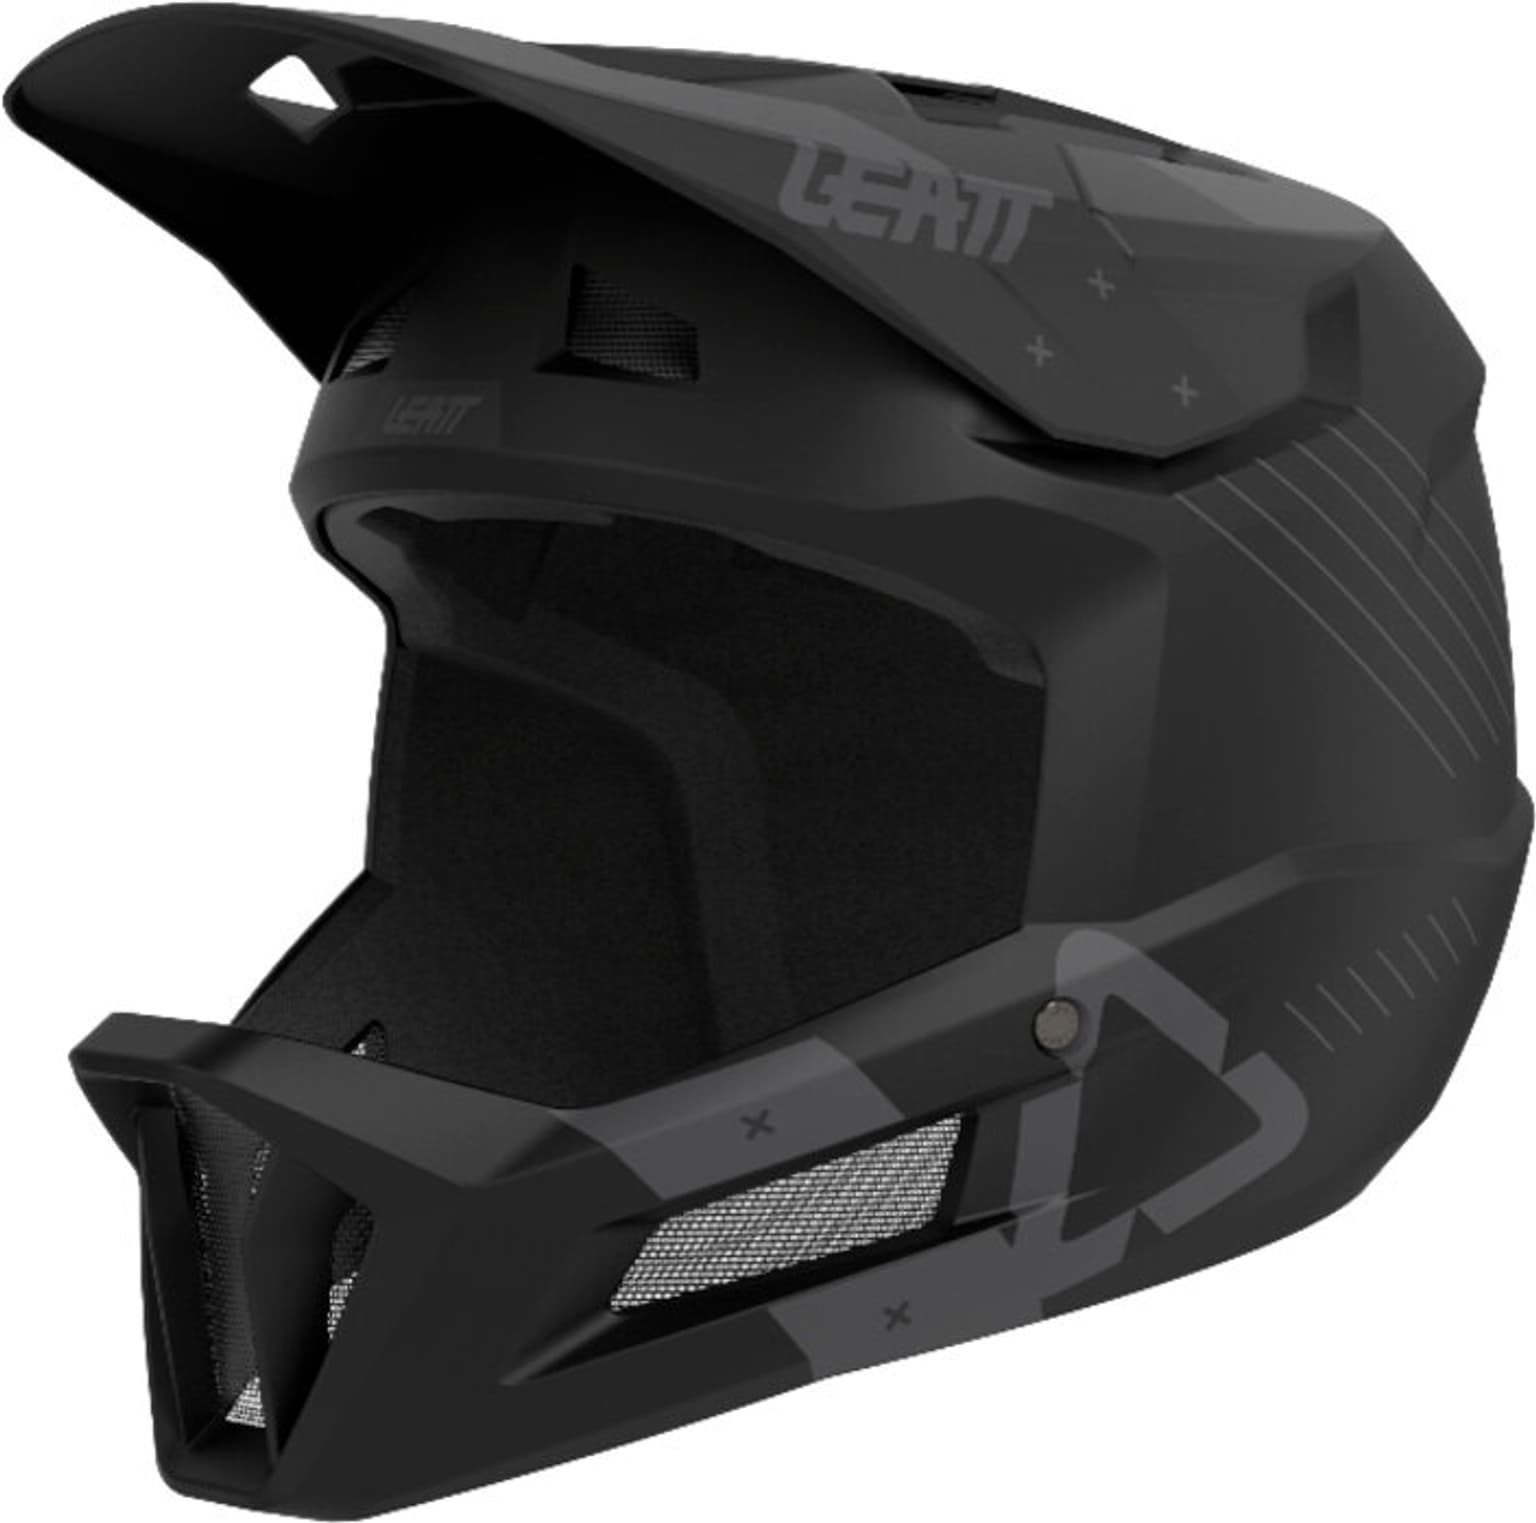 Leatt Leatt MTB Gravity 2.0 Helmet Velohelm kohle 1